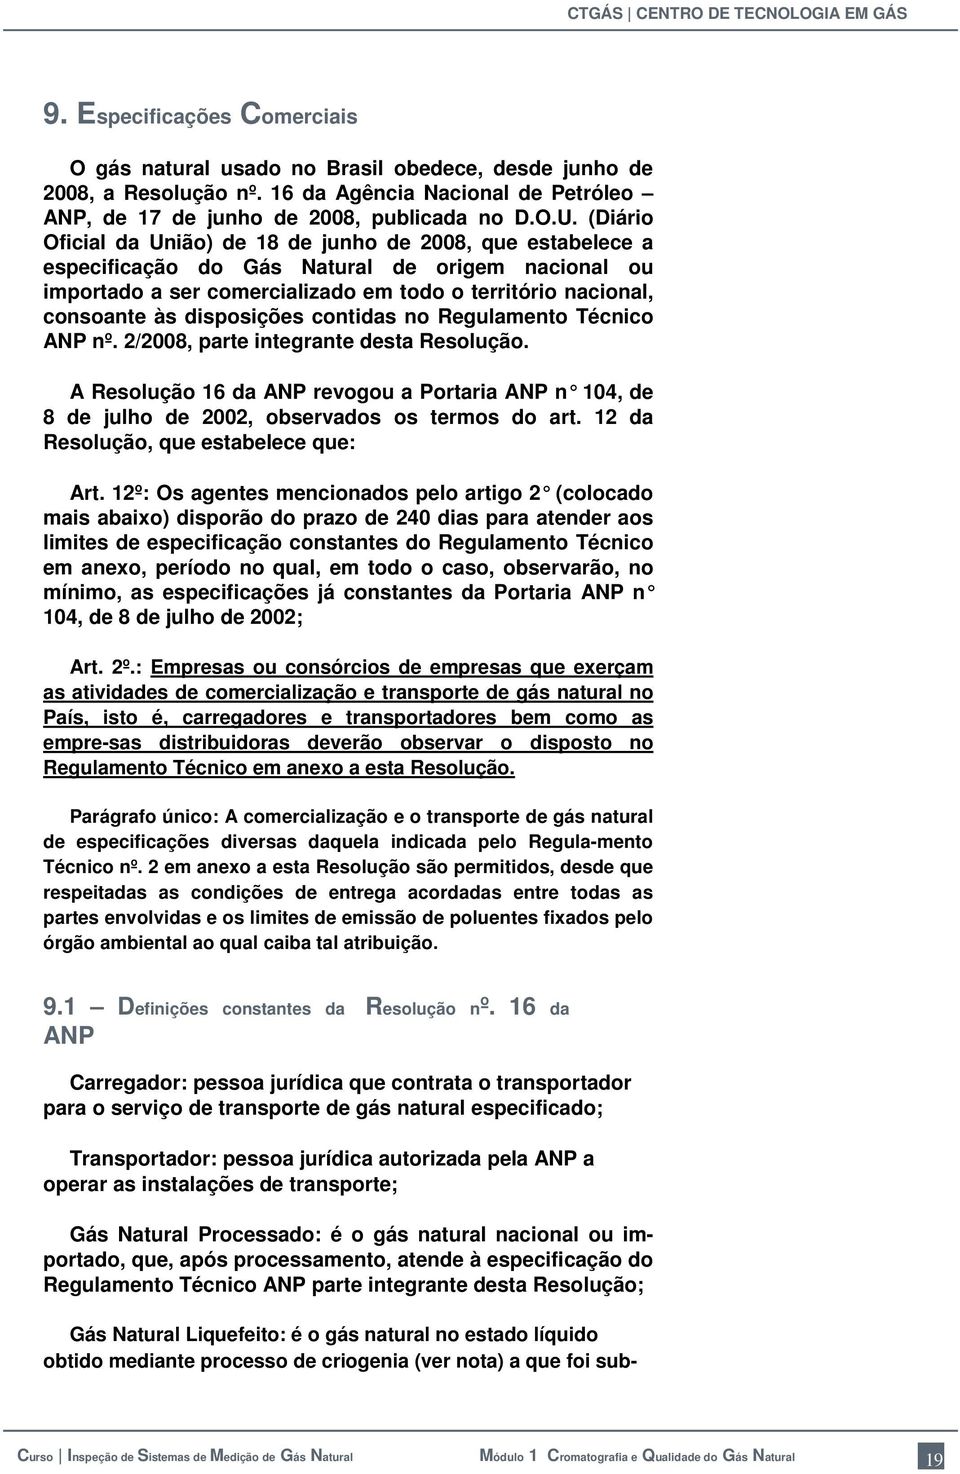 disposições contidas no Regulamento Técnico ANP nº. 2/2008, parte integrante desta Resolução. A Resolução 16 da ANP revogou a Portaria ANP n 104, de 8 de julho de 2002, observados os termos do art.